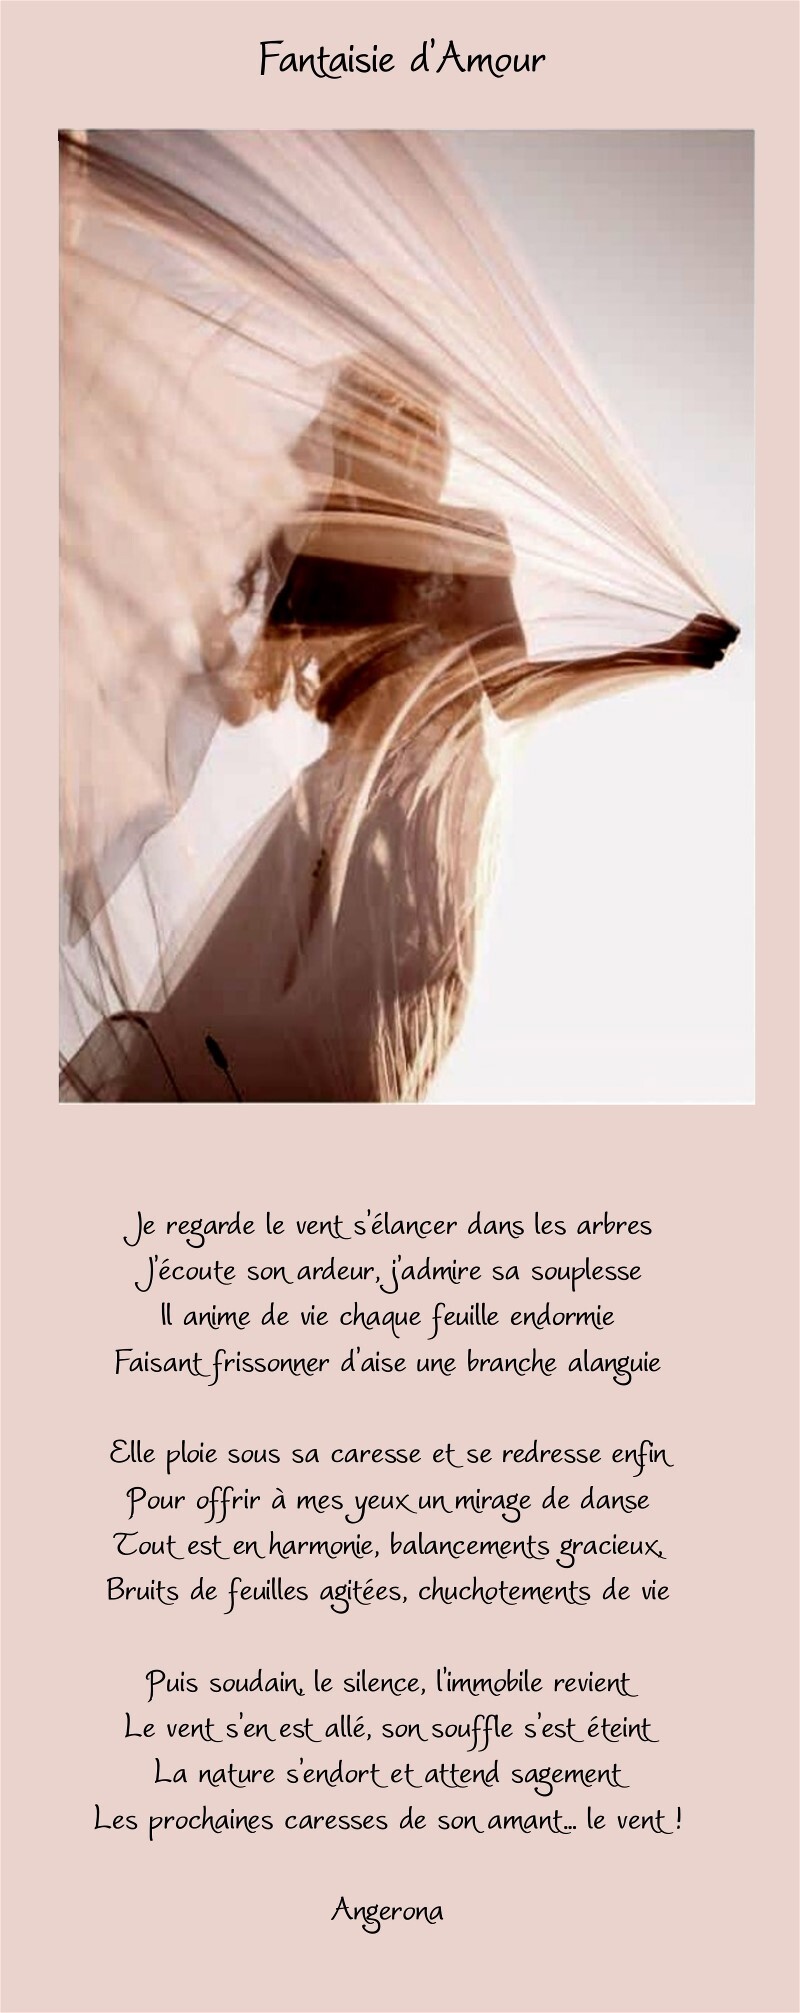 Fantaisie d'Amour - Angerona Uqh411